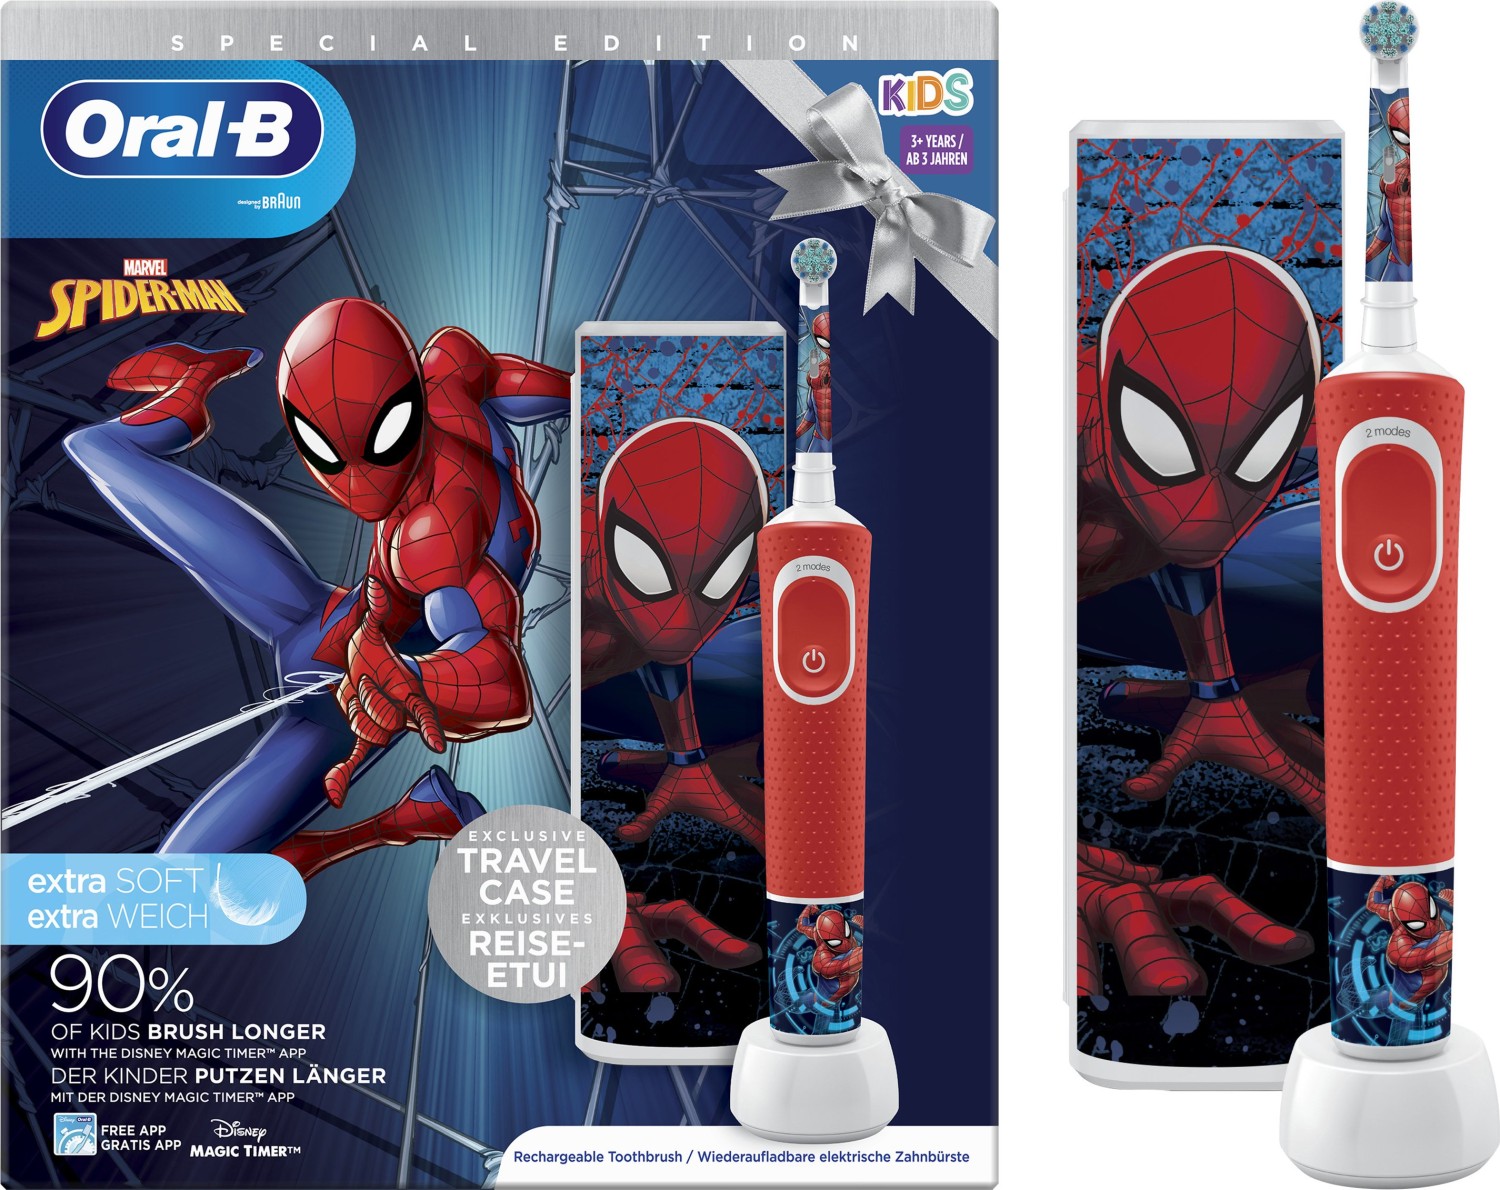 D100k Spiderman Gift Pack